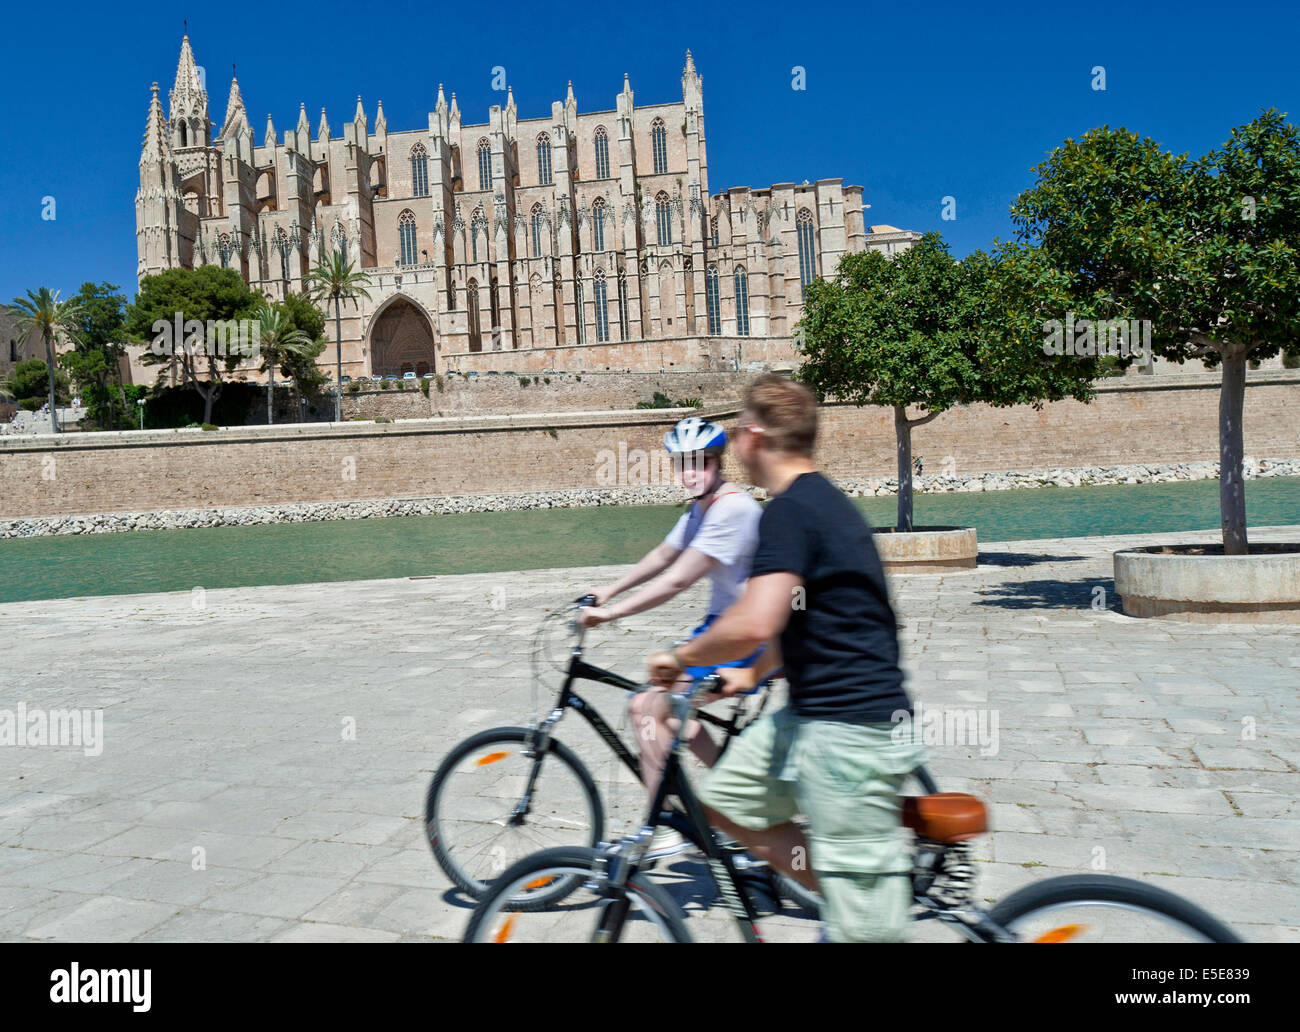 Palma Cycling Mallorca zwei Radfahrer fahren in der Nähe der Kathedrale von Palma im Parc de la Mar Altstadt von Palma Mallorca Spanien Stockfoto